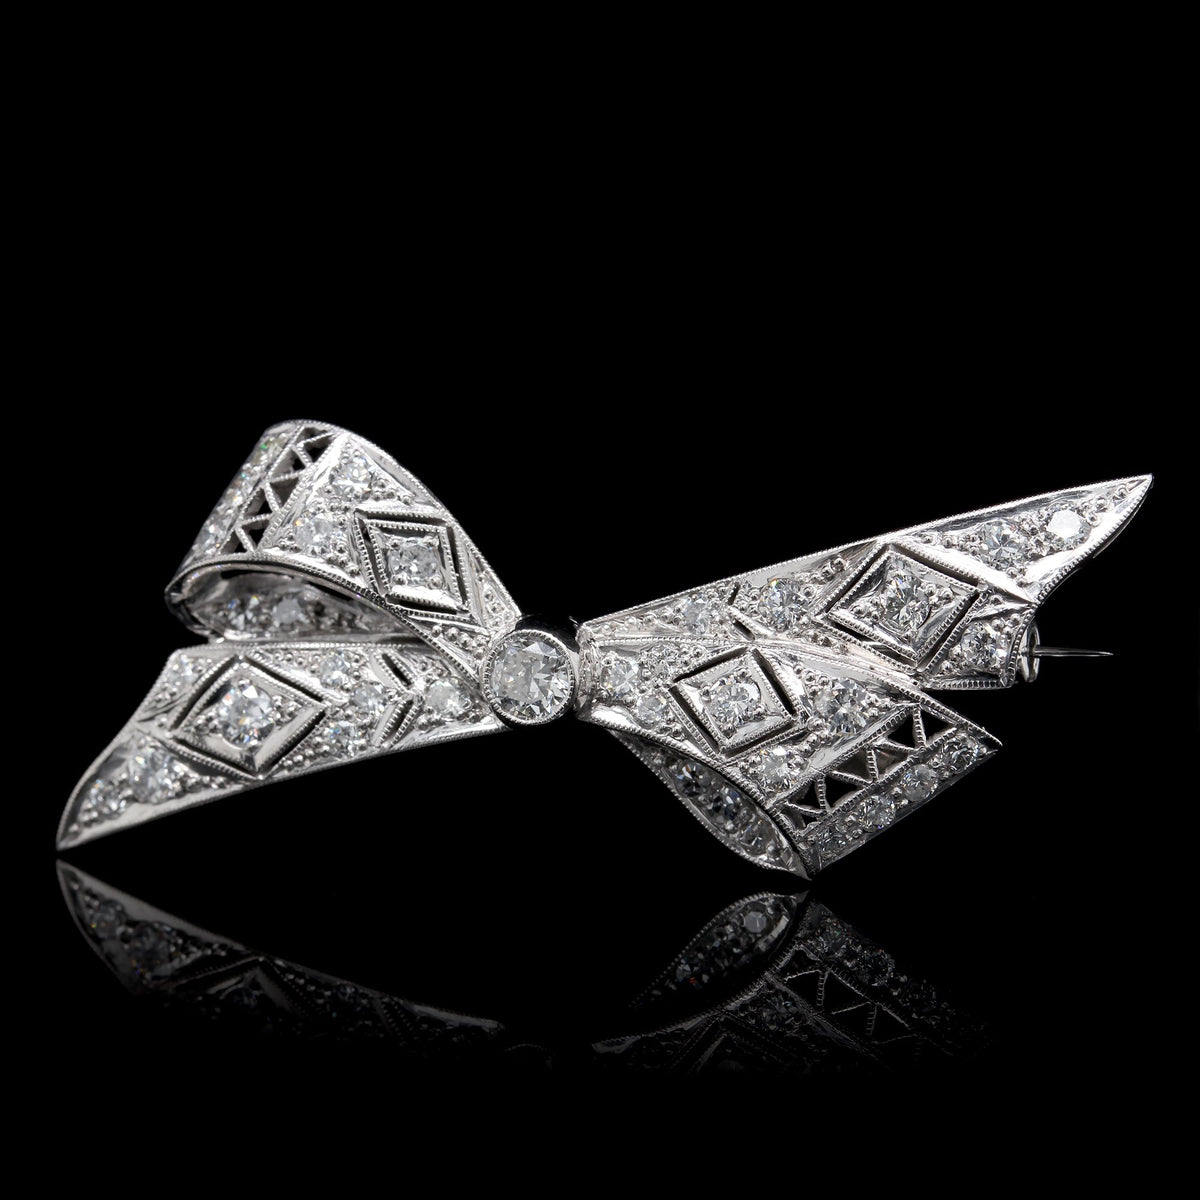 18K White Gold Estate Vintage Style Diamond Bow Pin